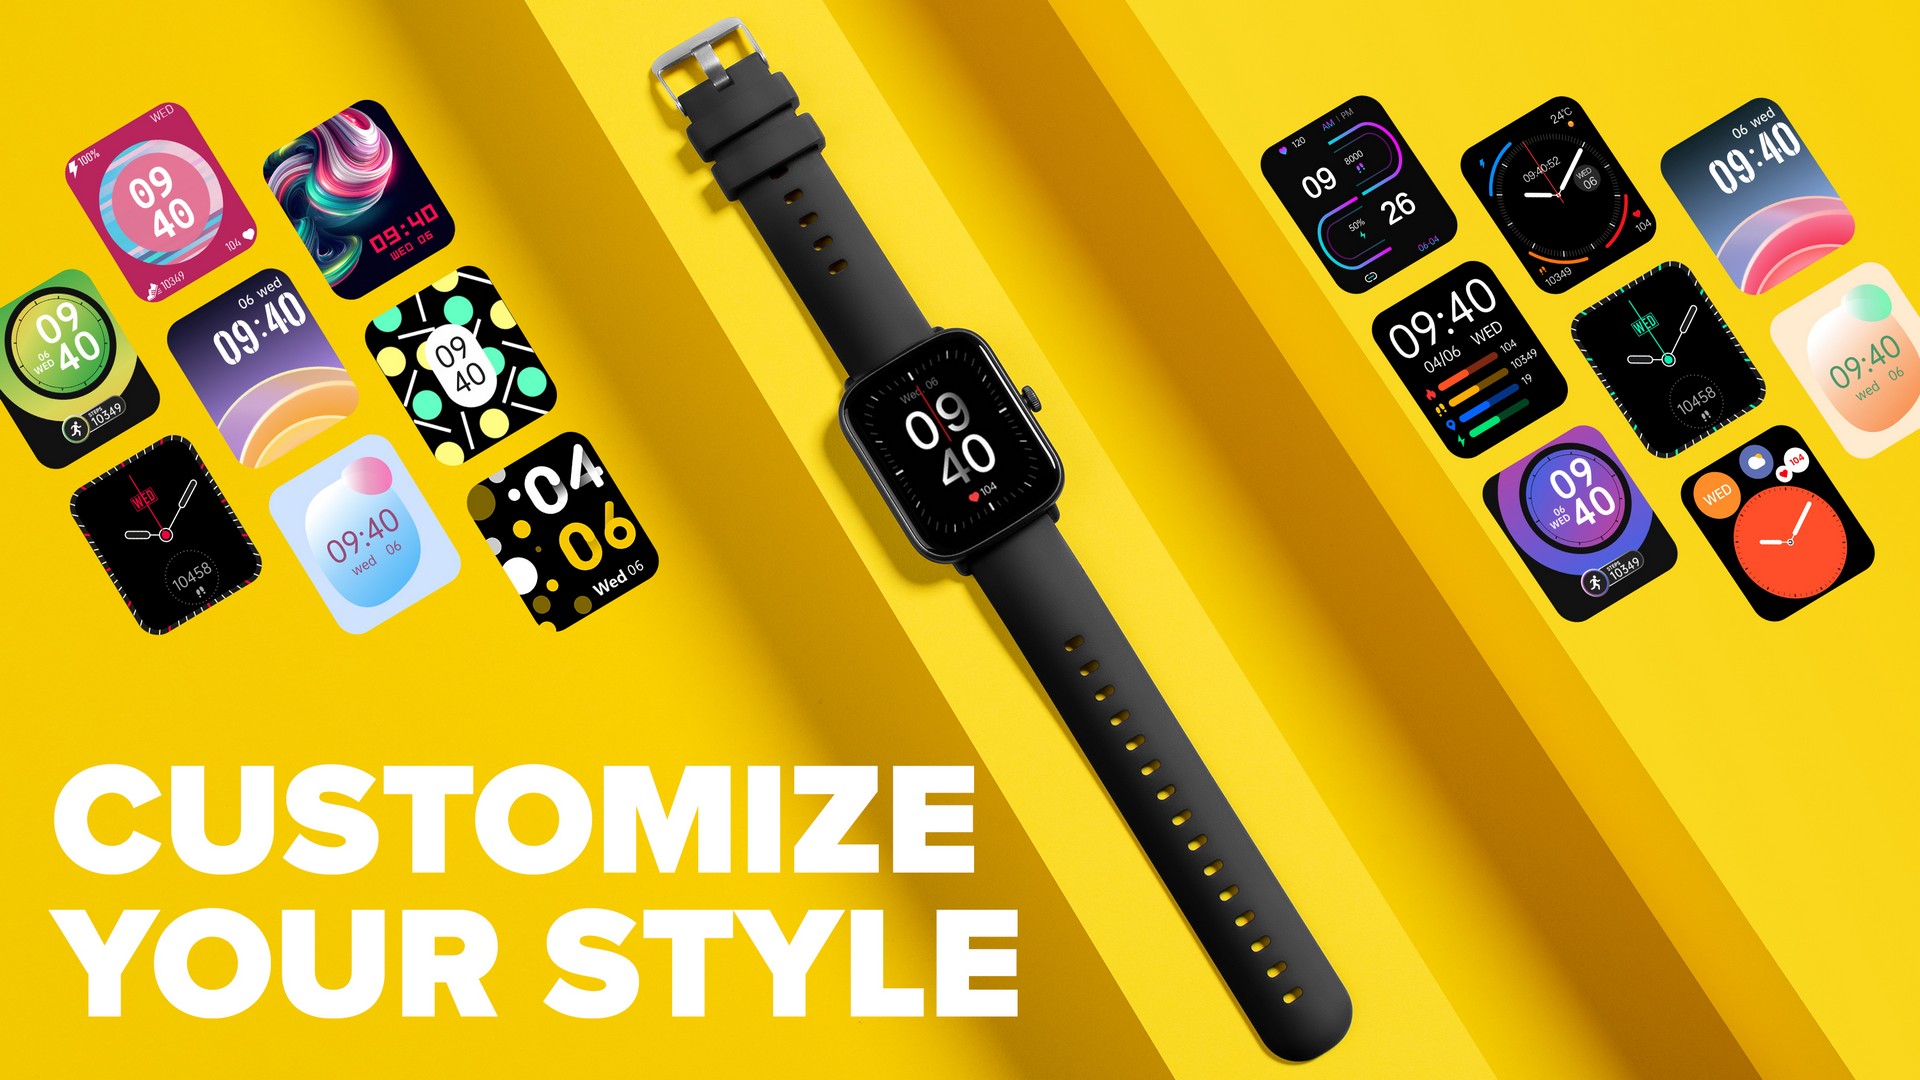 Chytré hodinky Niceboy X-Fit Watch Lite 3 podporují mobilní aplikaci FitCloudPro, s jejíž pomocí vytěžíte z hodinek ještě více funkcí.